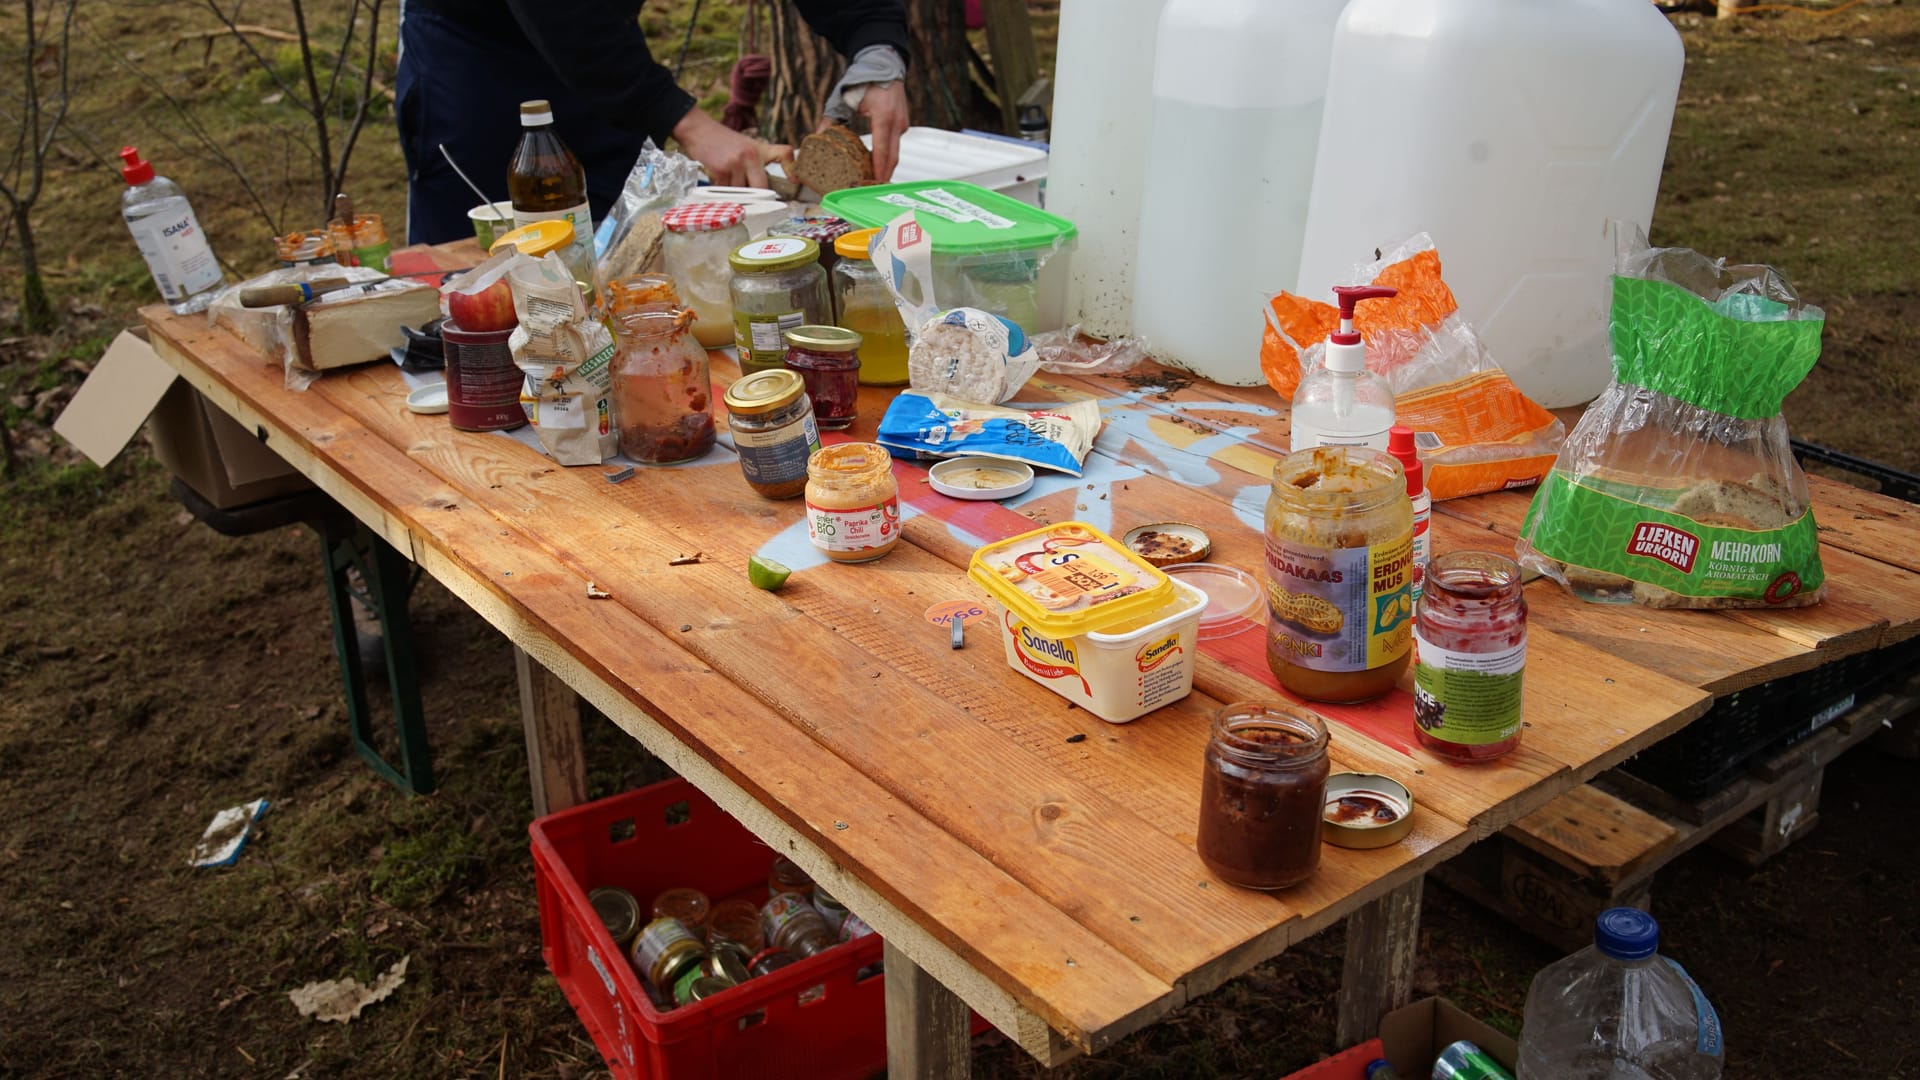 Wie das Meiste in der Besetzung wird auch das Essen und Kochen gemeinschaftlich organisiert.